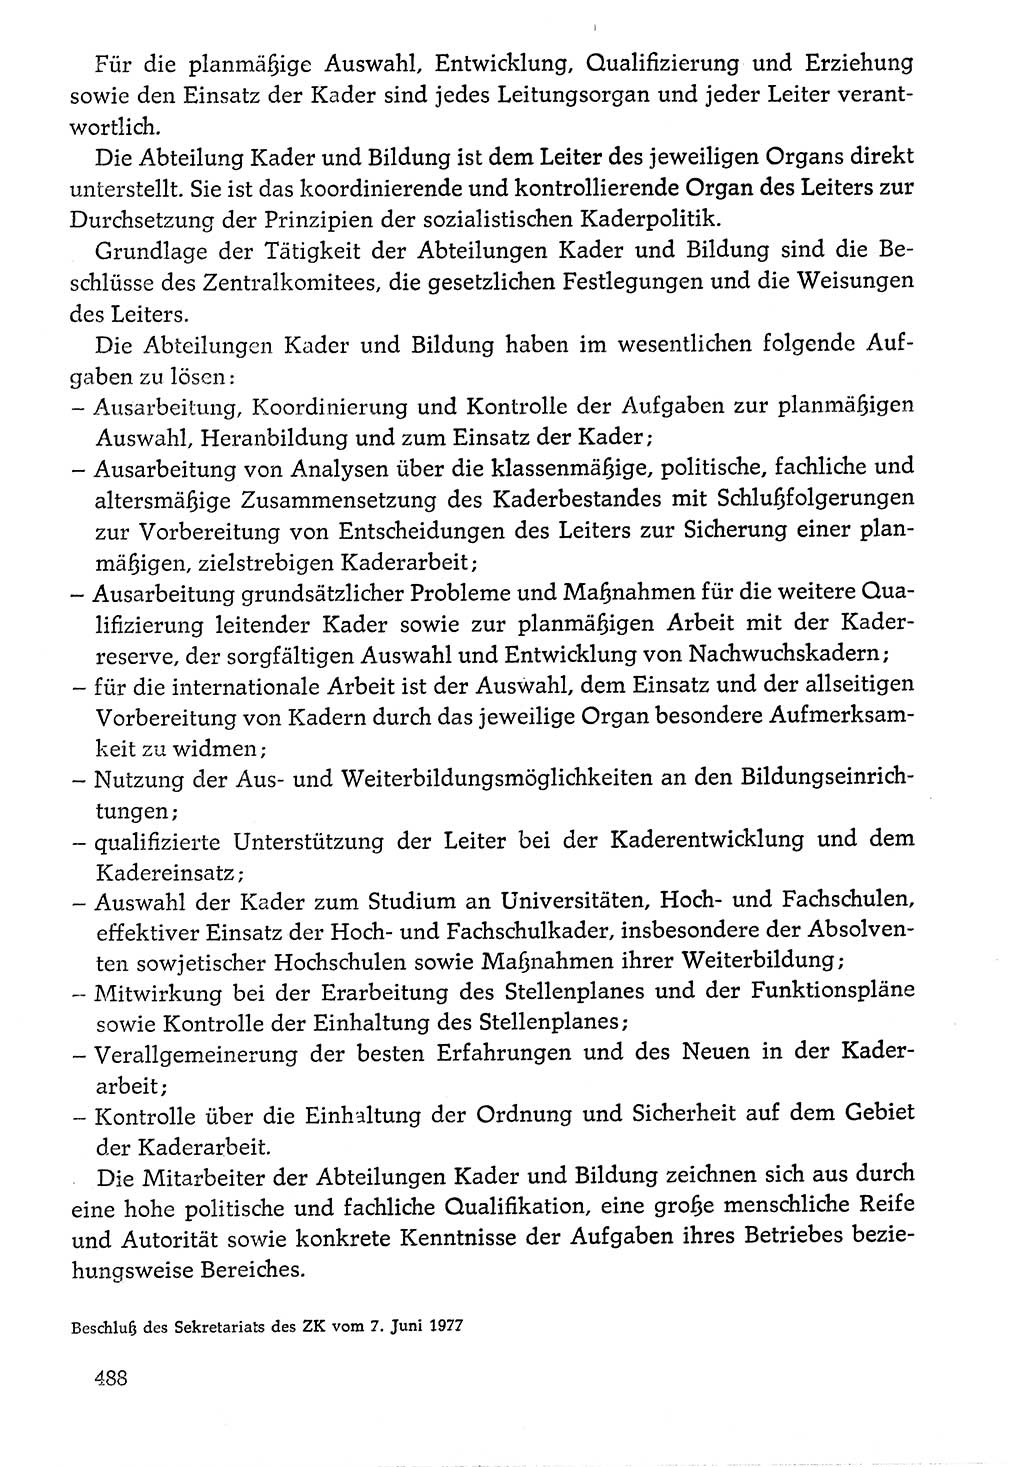 Dokumente der Sozialistischen Einheitspartei Deutschlands (SED) [Deutsche Demokratische Republik (DDR)] 1976-1977, Seite 488 (Dok. SED DDR 1976-1977, S. 488)